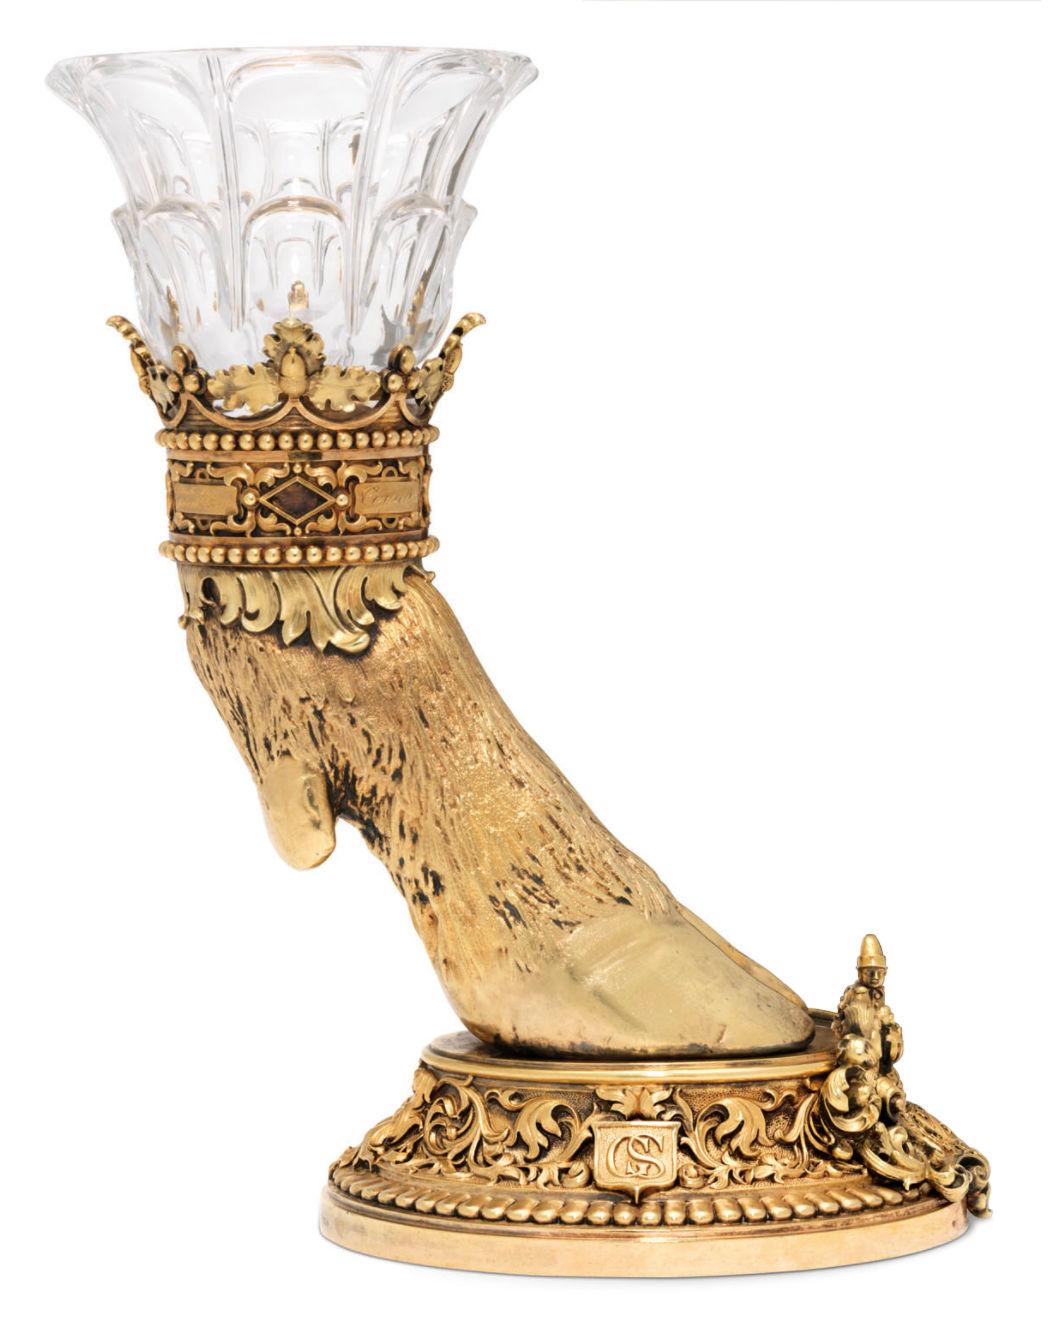 Notre étonnante coupe de chasse en argent et métal doré, avec son étui de présentation d'origine, a été conçue par Jean-François Deniere pour le baron Johan-George Schickler afin de célébrer son abattage d'un cerf à dix points près de Paris en